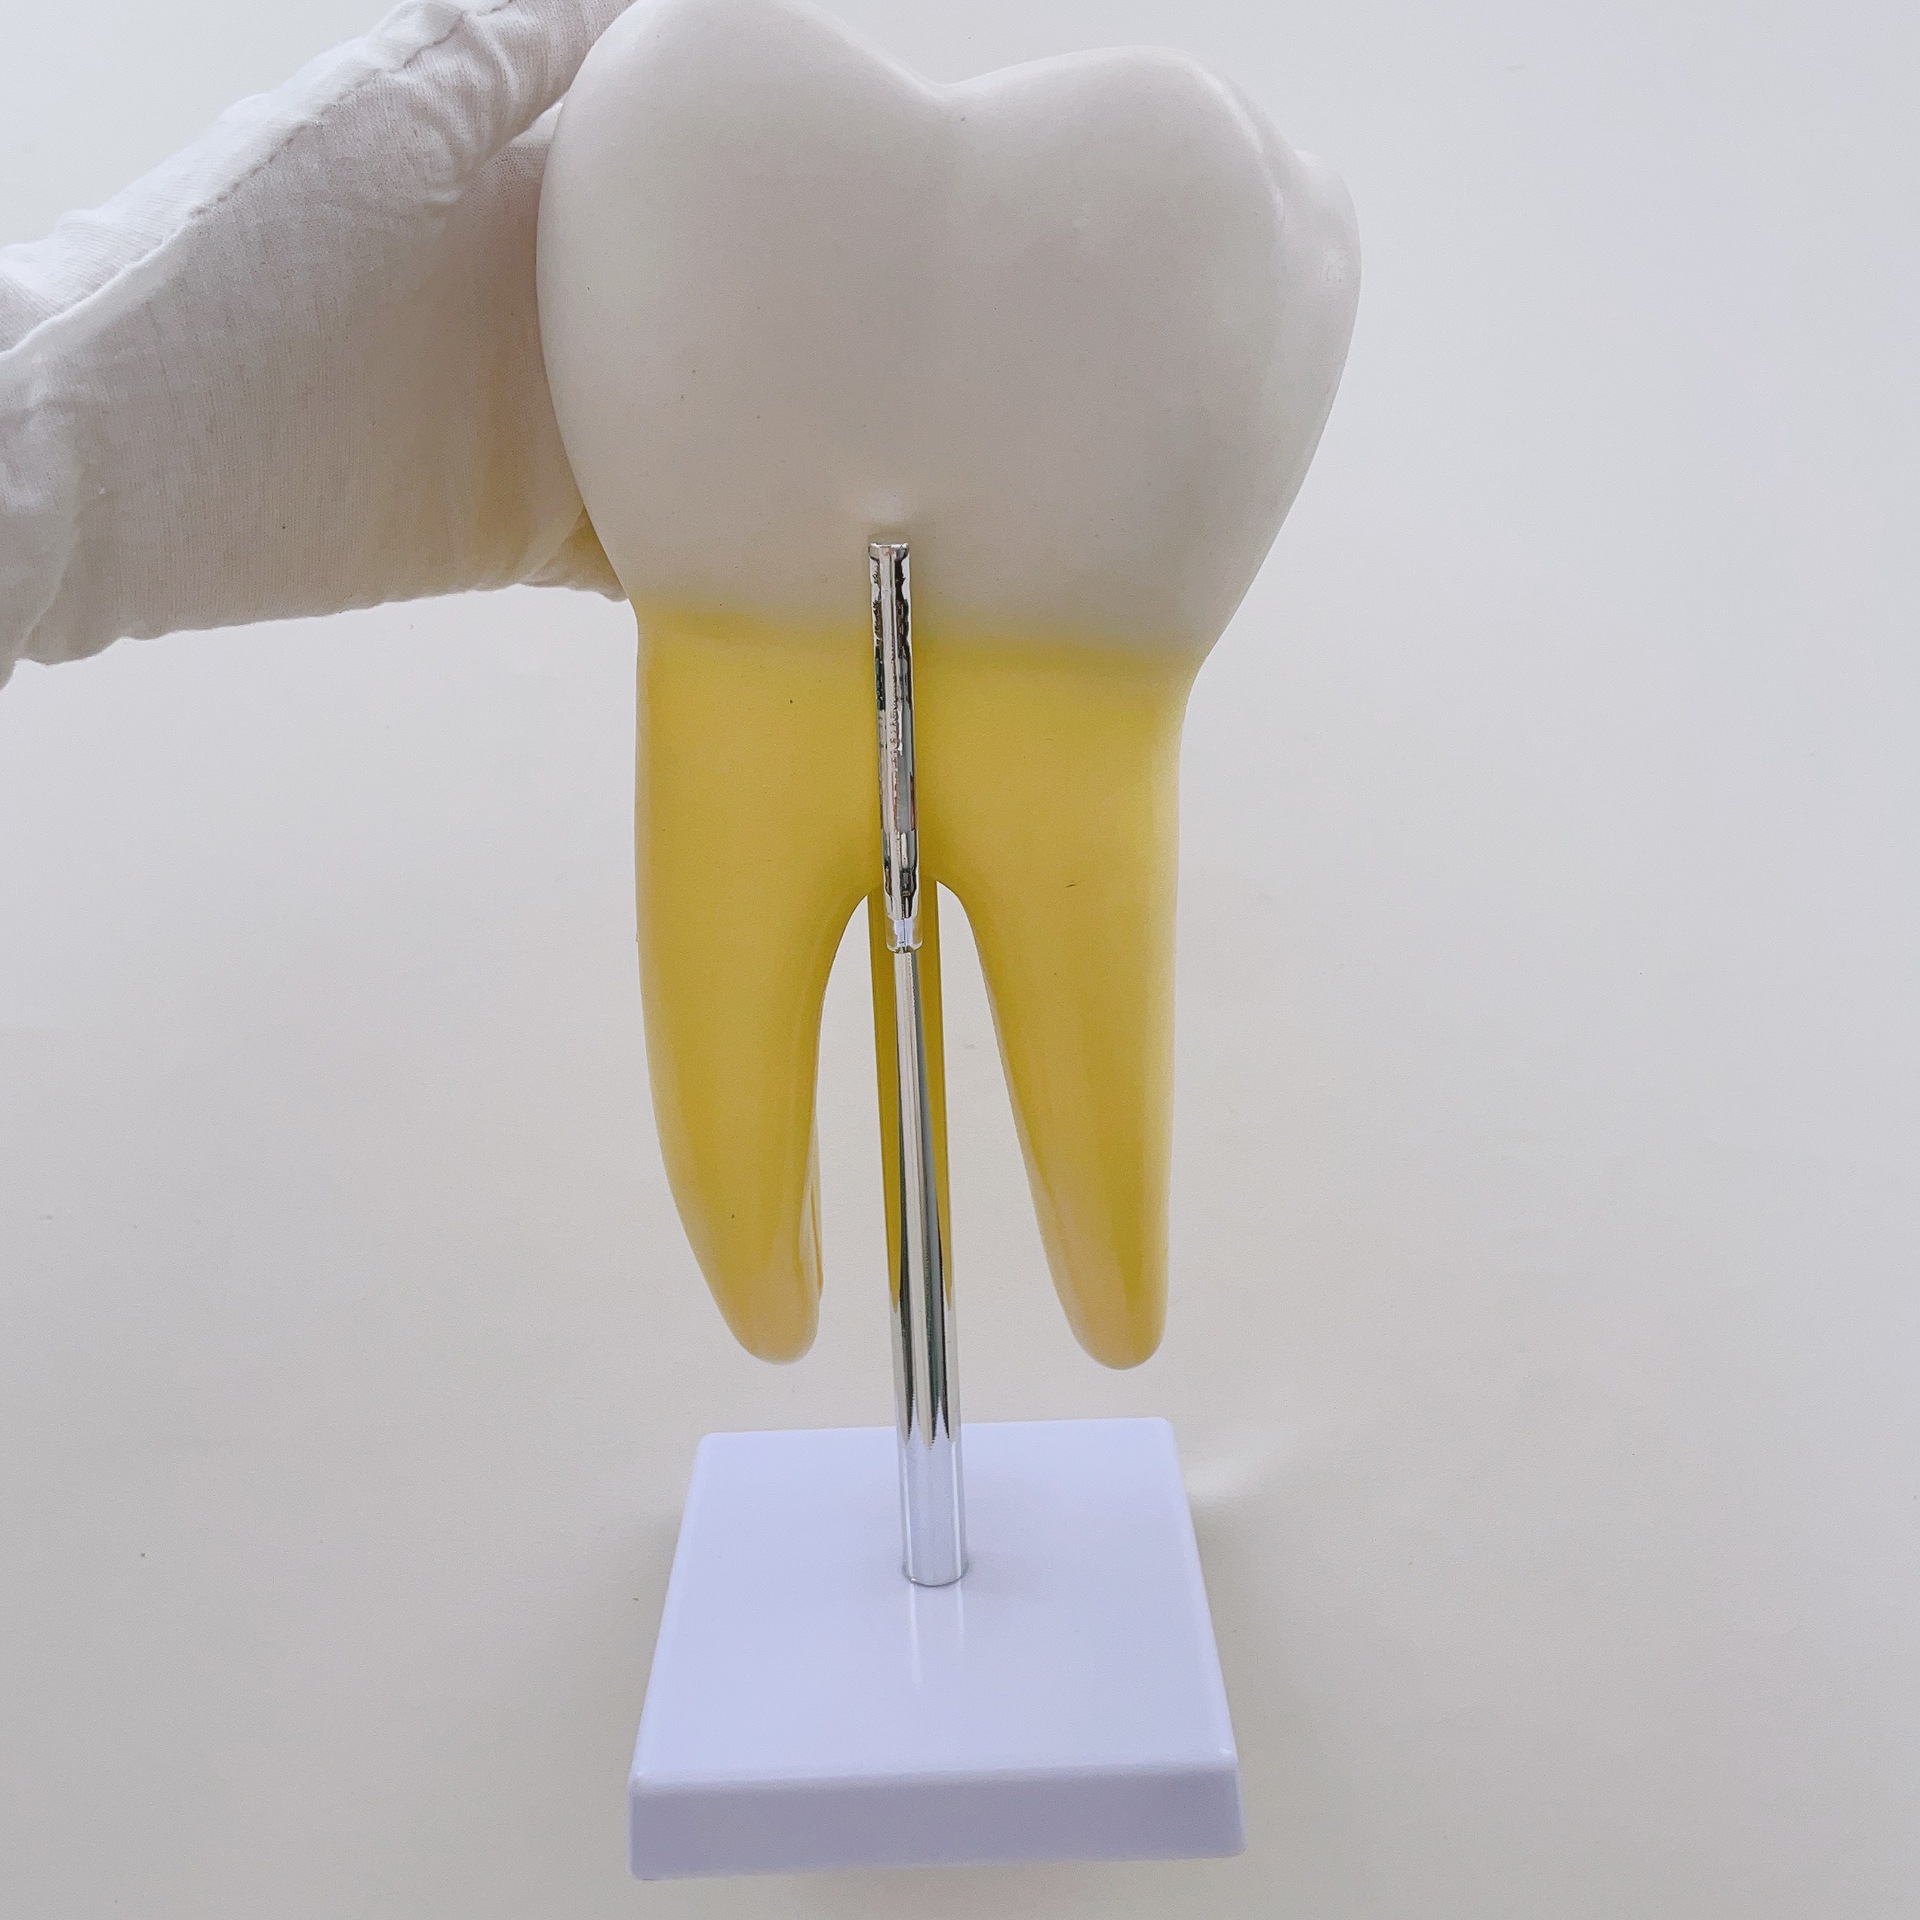 正常牙齿放大模型 磨牙 切牙 尖牙放大 人体牙齿教学模型